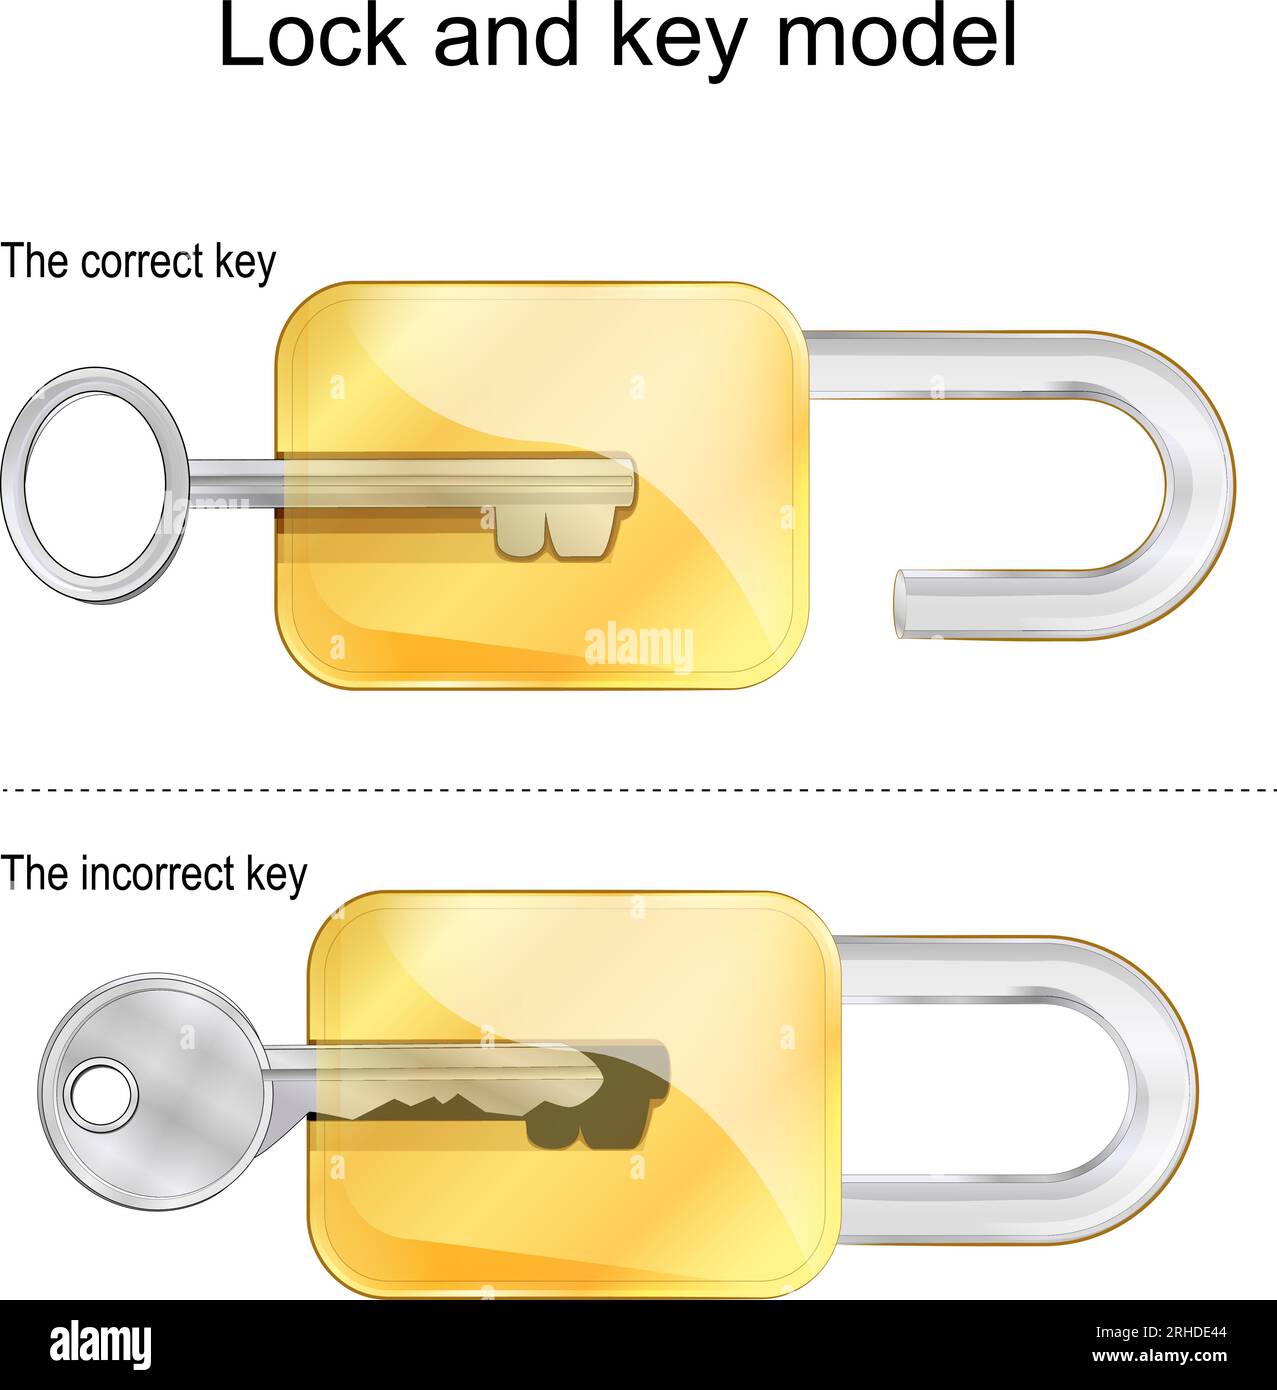 Modèle de serrure et de clé. Les clés correctes et incorrectes. Illustration vectorielle Illustration de Vecteur